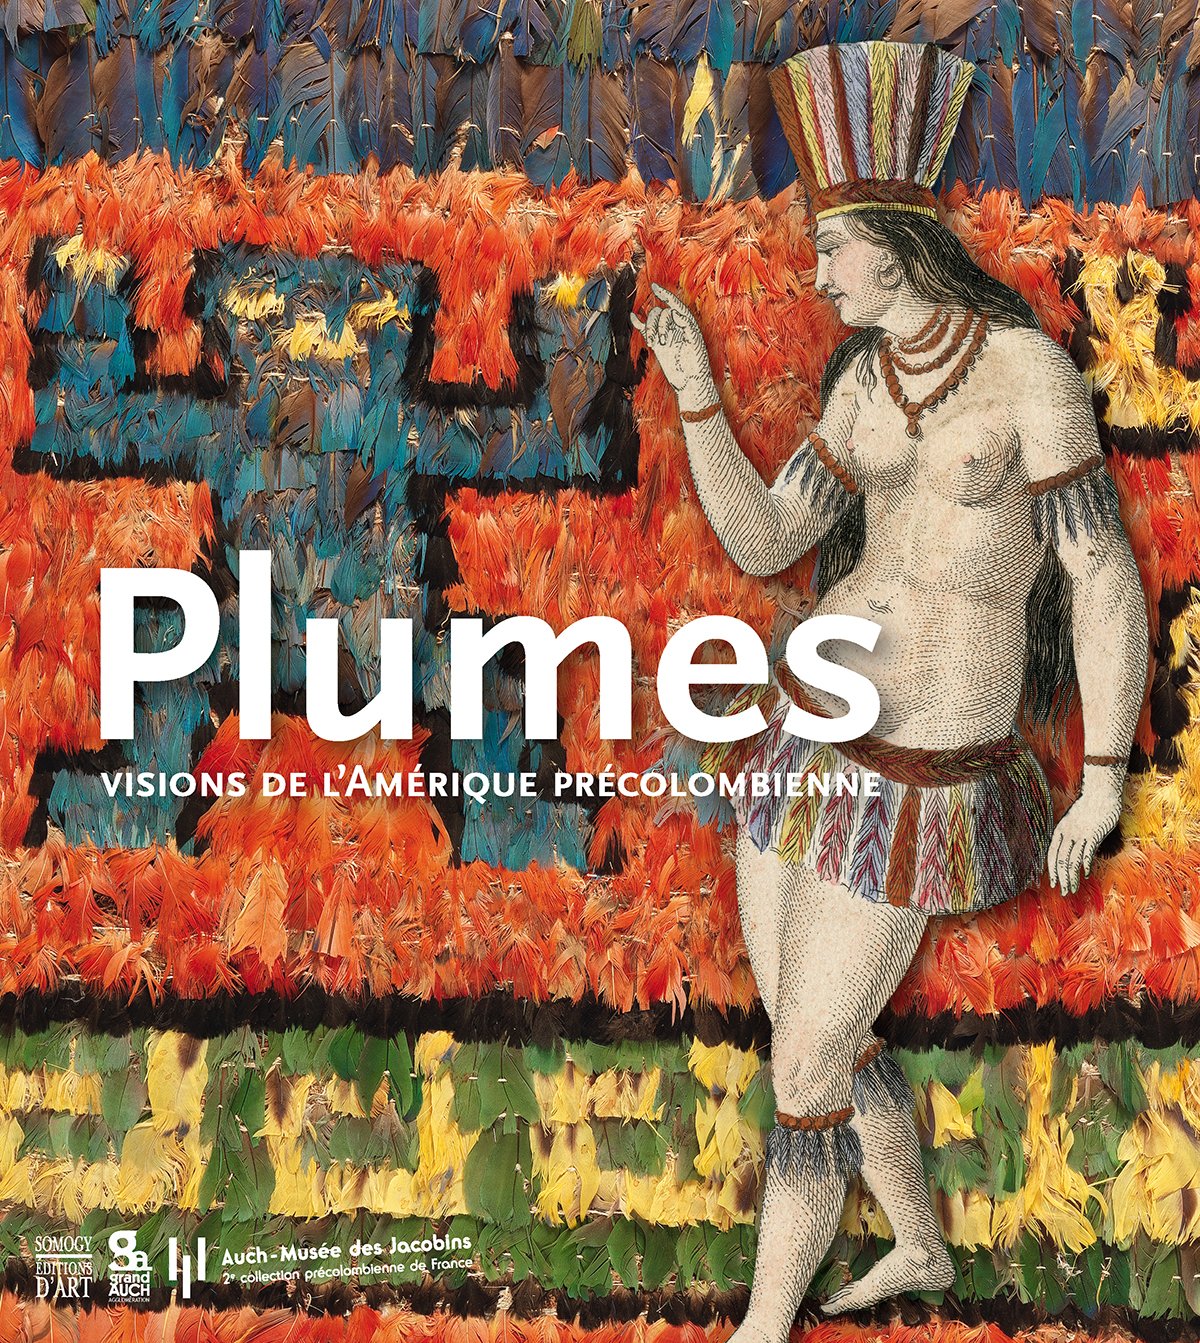 Plumes, Visions de l'Amérique précolombienne, 2016, 120 p.